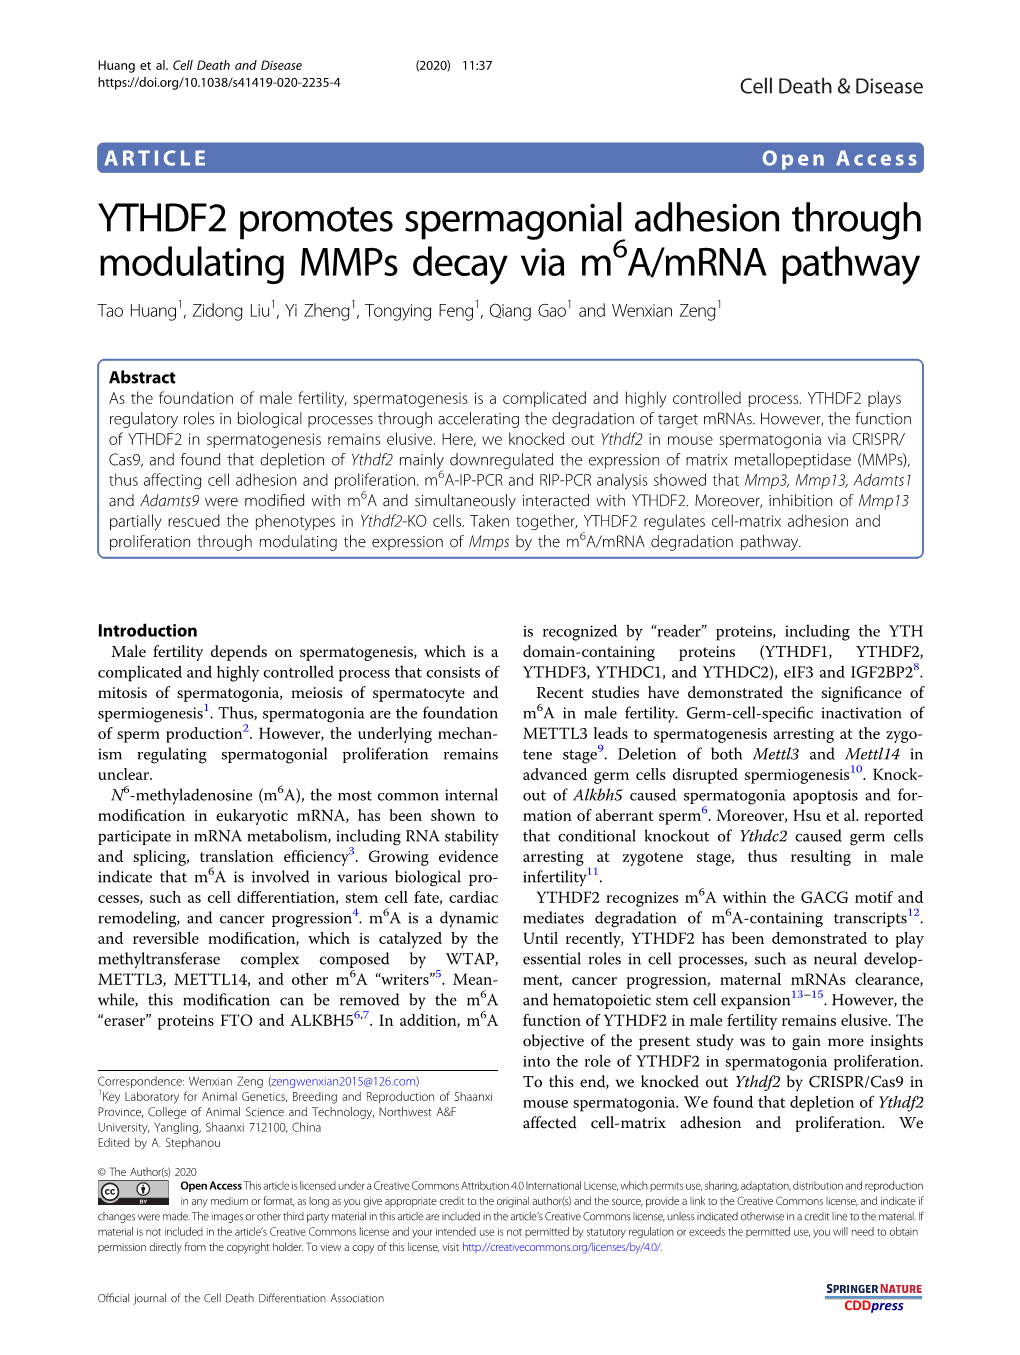 YTHDF2 Promotes Spermagonial Adhesion Through Modulating Mmps Decay Via M6a/Mrna Pathway Tao Huang1, Zidong Liu1,Yizheng1, Tongying Feng1,Qianggao1 and Wenxian Zeng1